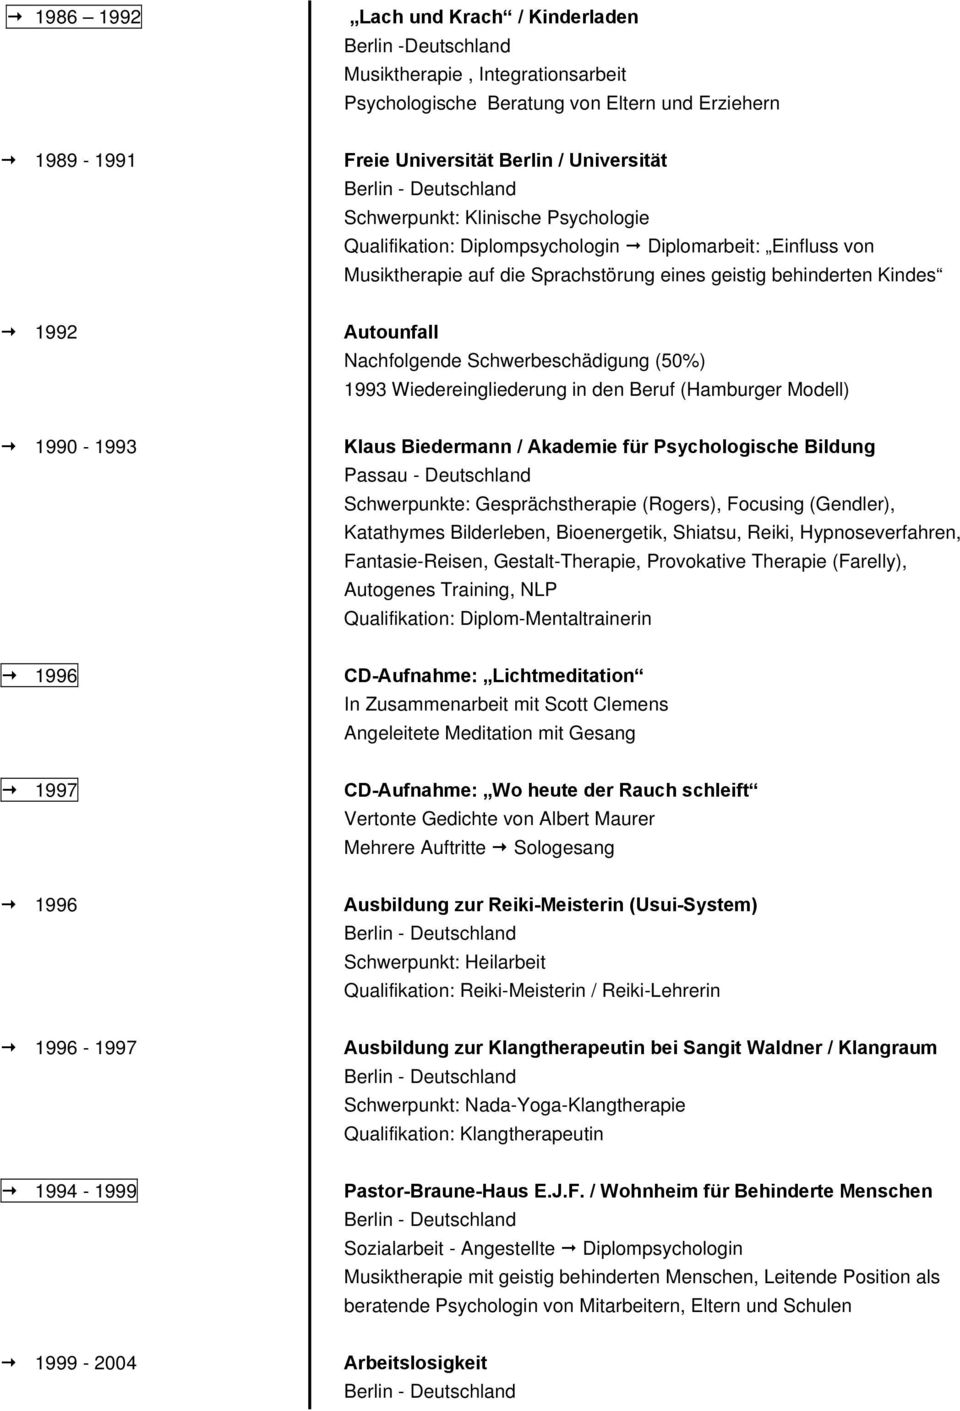 Schwerbeschädigung (50%) 1993 Wiedereingliederung in den Beruf (Hamburger Modell) 1990-1993 Klaus Biedermann / Akademie für Psychologische Bildung Passau - Deutschland Schwerpunkte: Gesprächstherapie